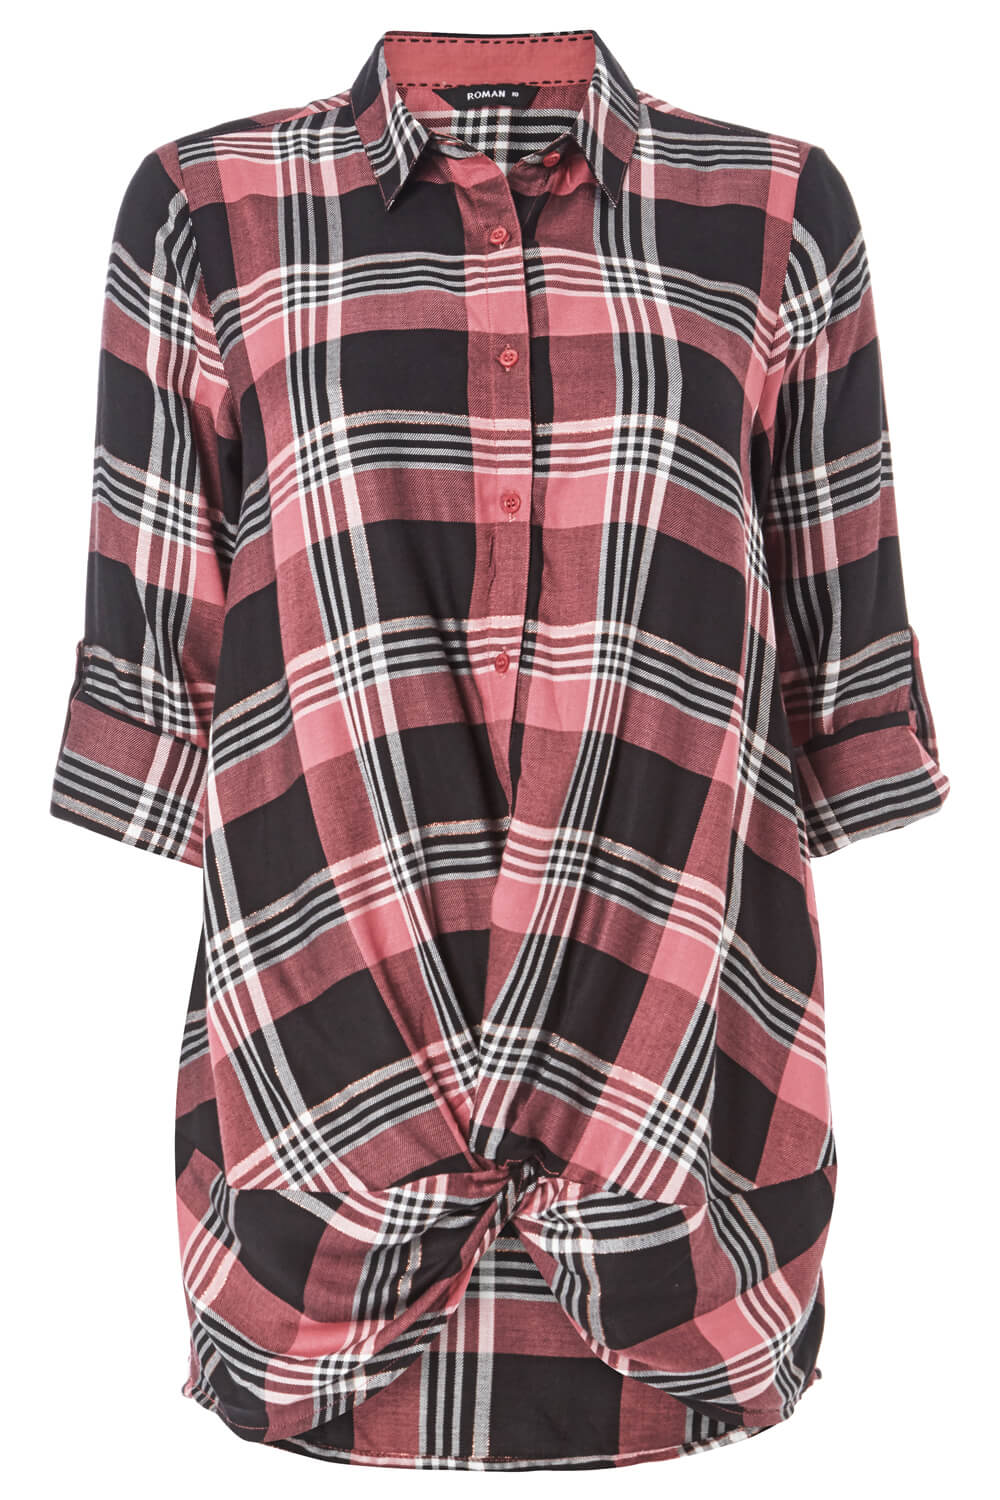 Lurex Check Twist Front Shirt in Pink - Roman Originals UK